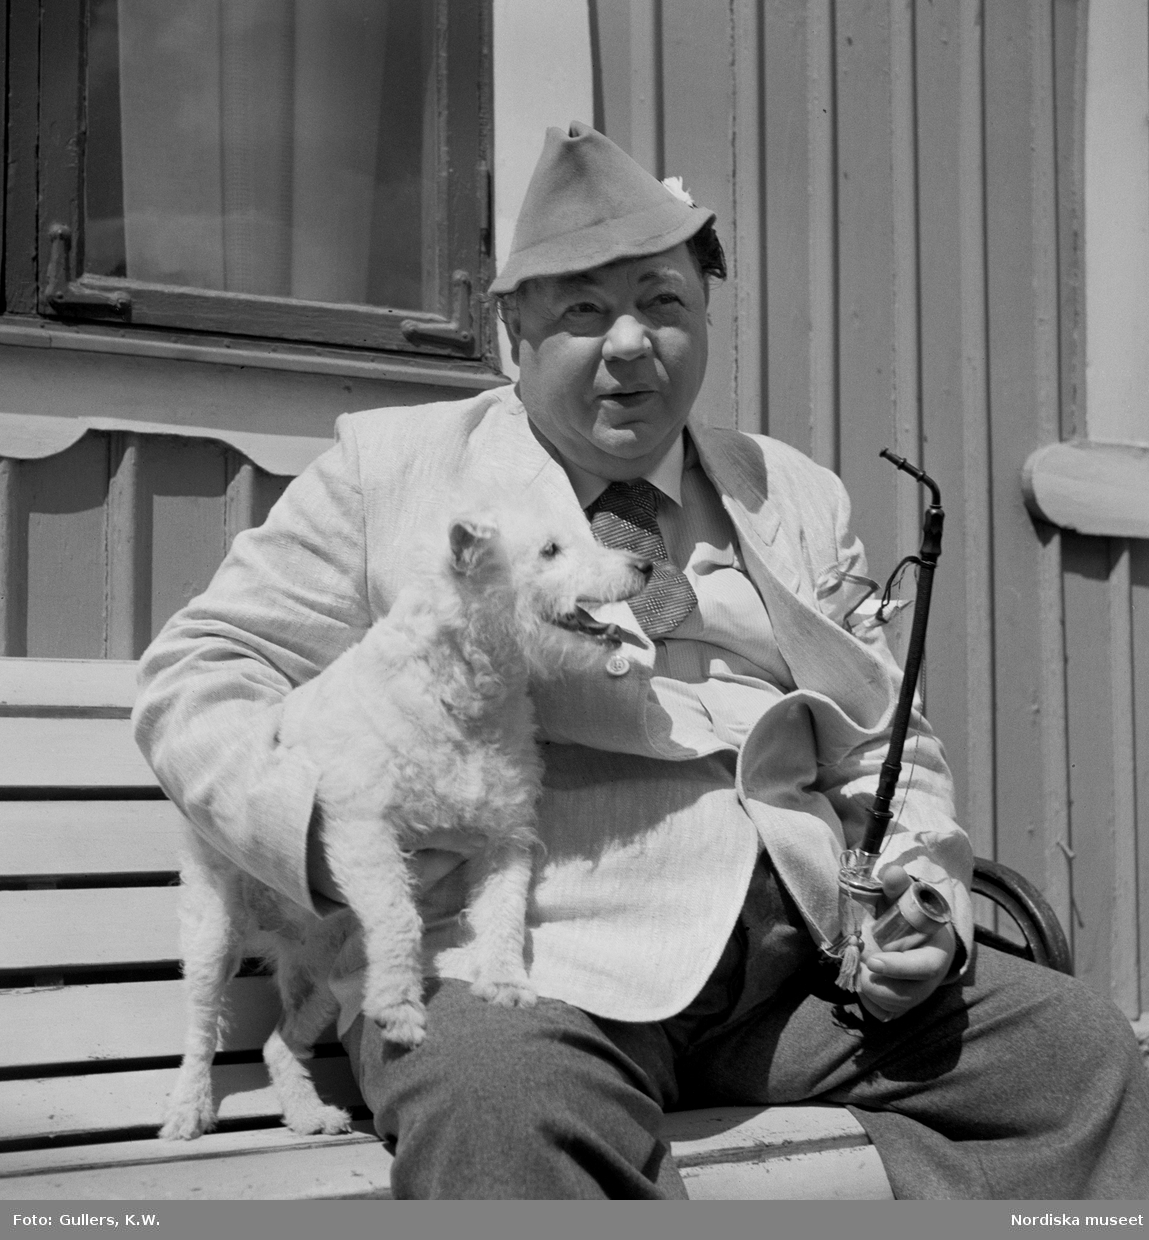 Skådespelaren Edvard Persson med pipa och hund. Bilden troligen tagen i samband med inspelningen av filmen Kalle på Spången i regi av Emil A. Lingheim 1939.